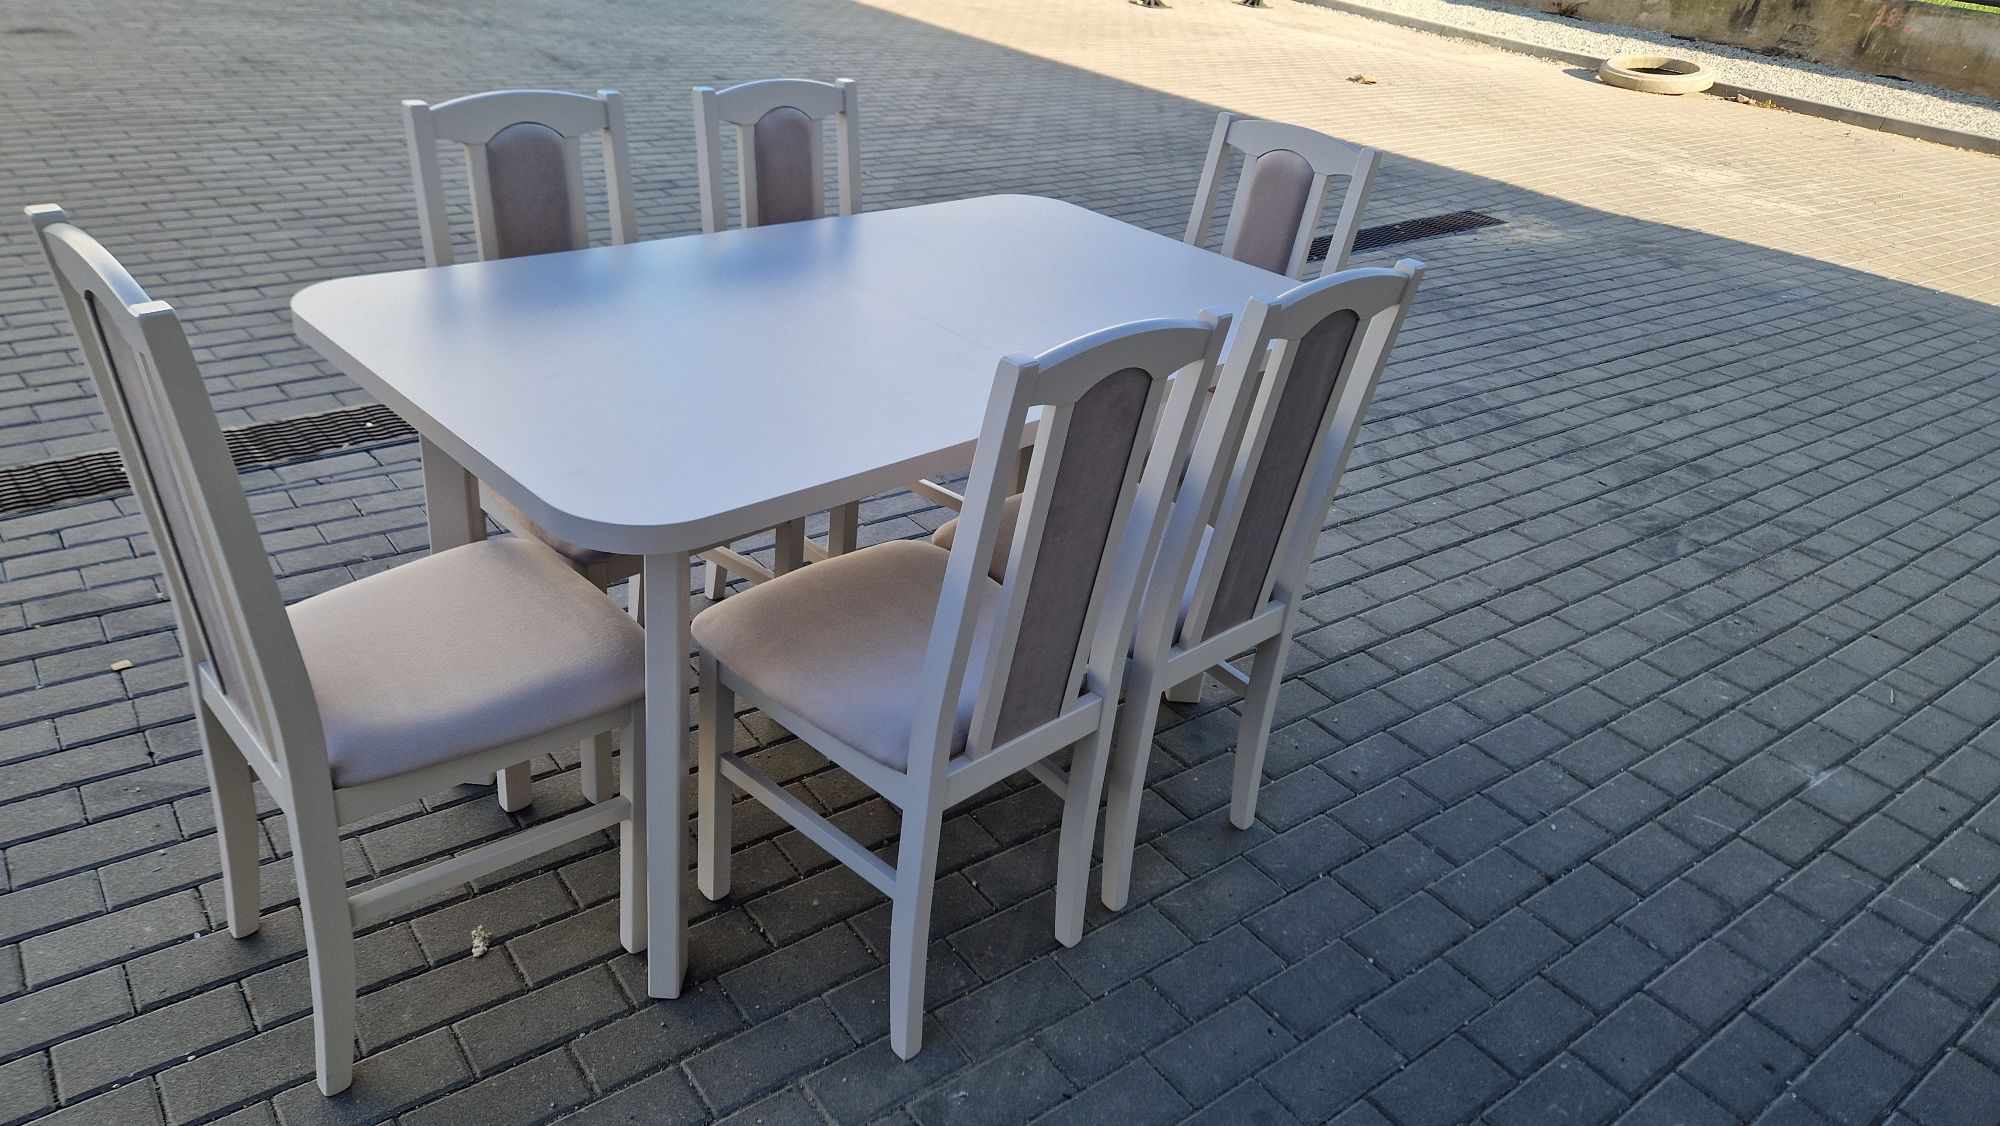 Nowe: Stół rozkładany + 6 krzeseł, KASZMIR+LATTE, dostawa cała PL